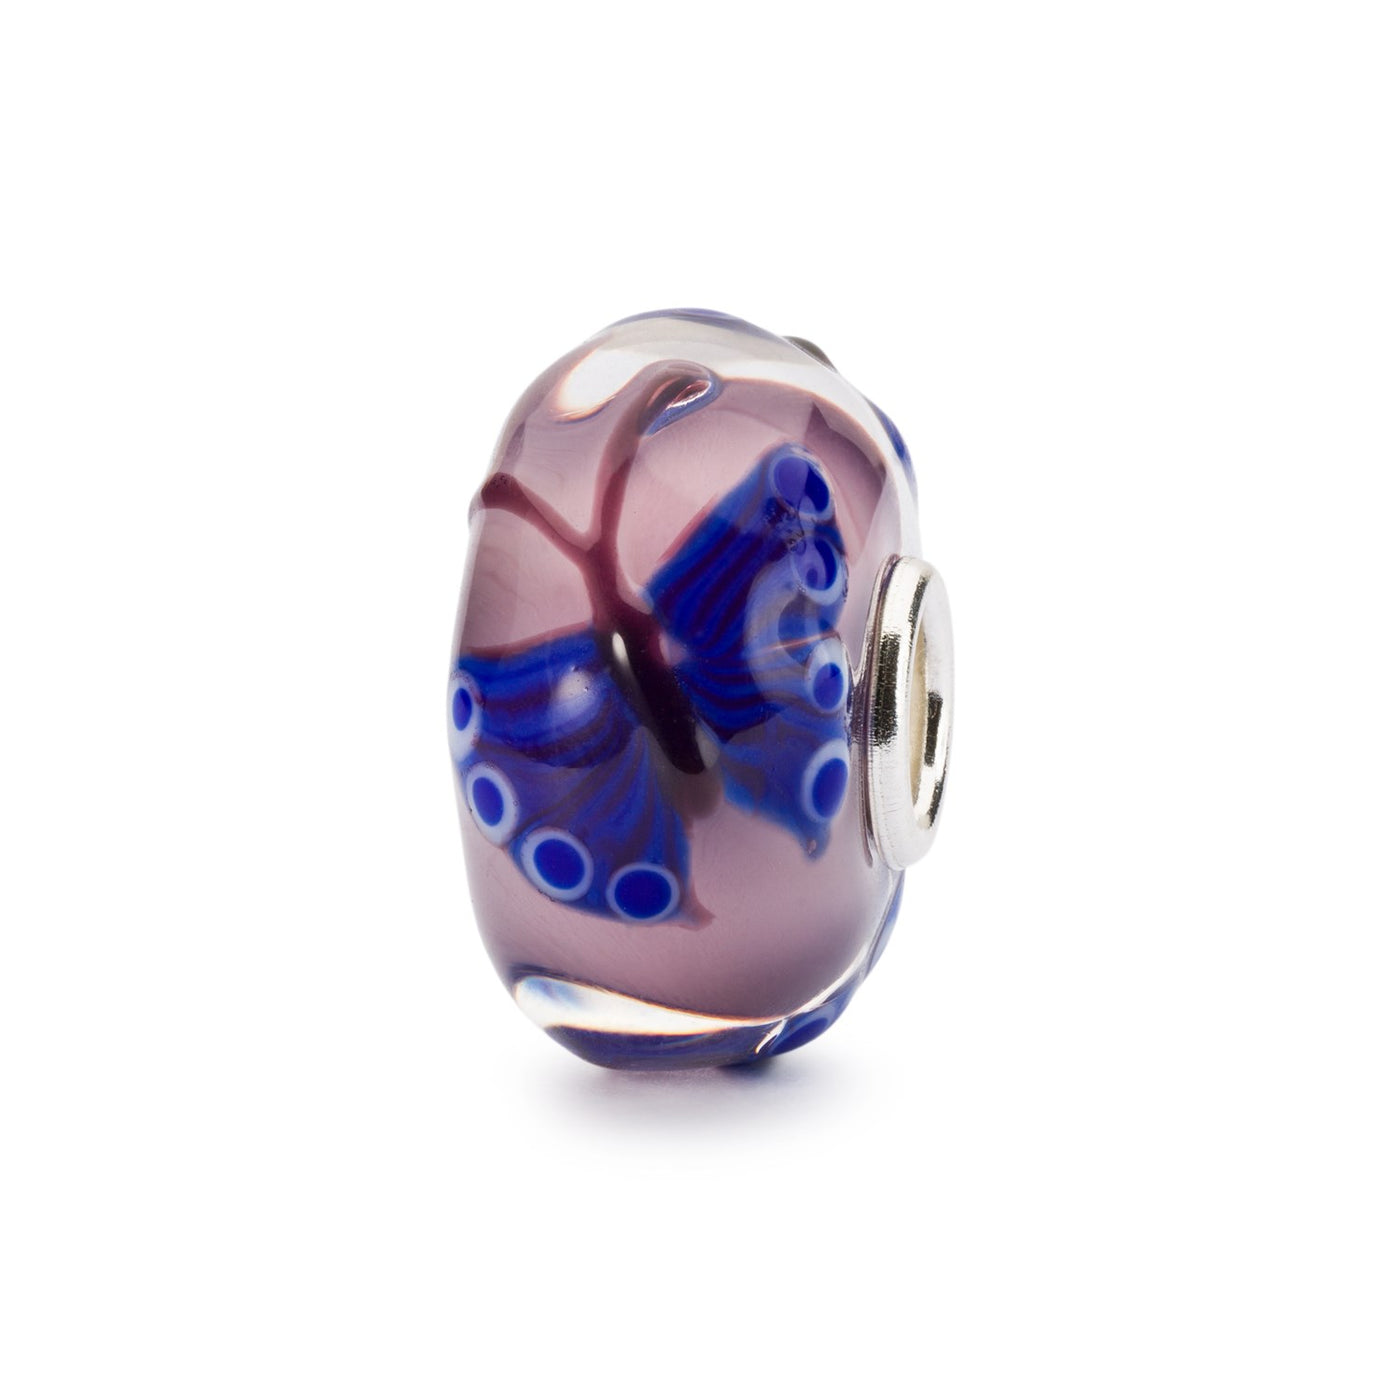 Perle de joaillerie en verre avec des papillons bleus sur un fond rose clair.